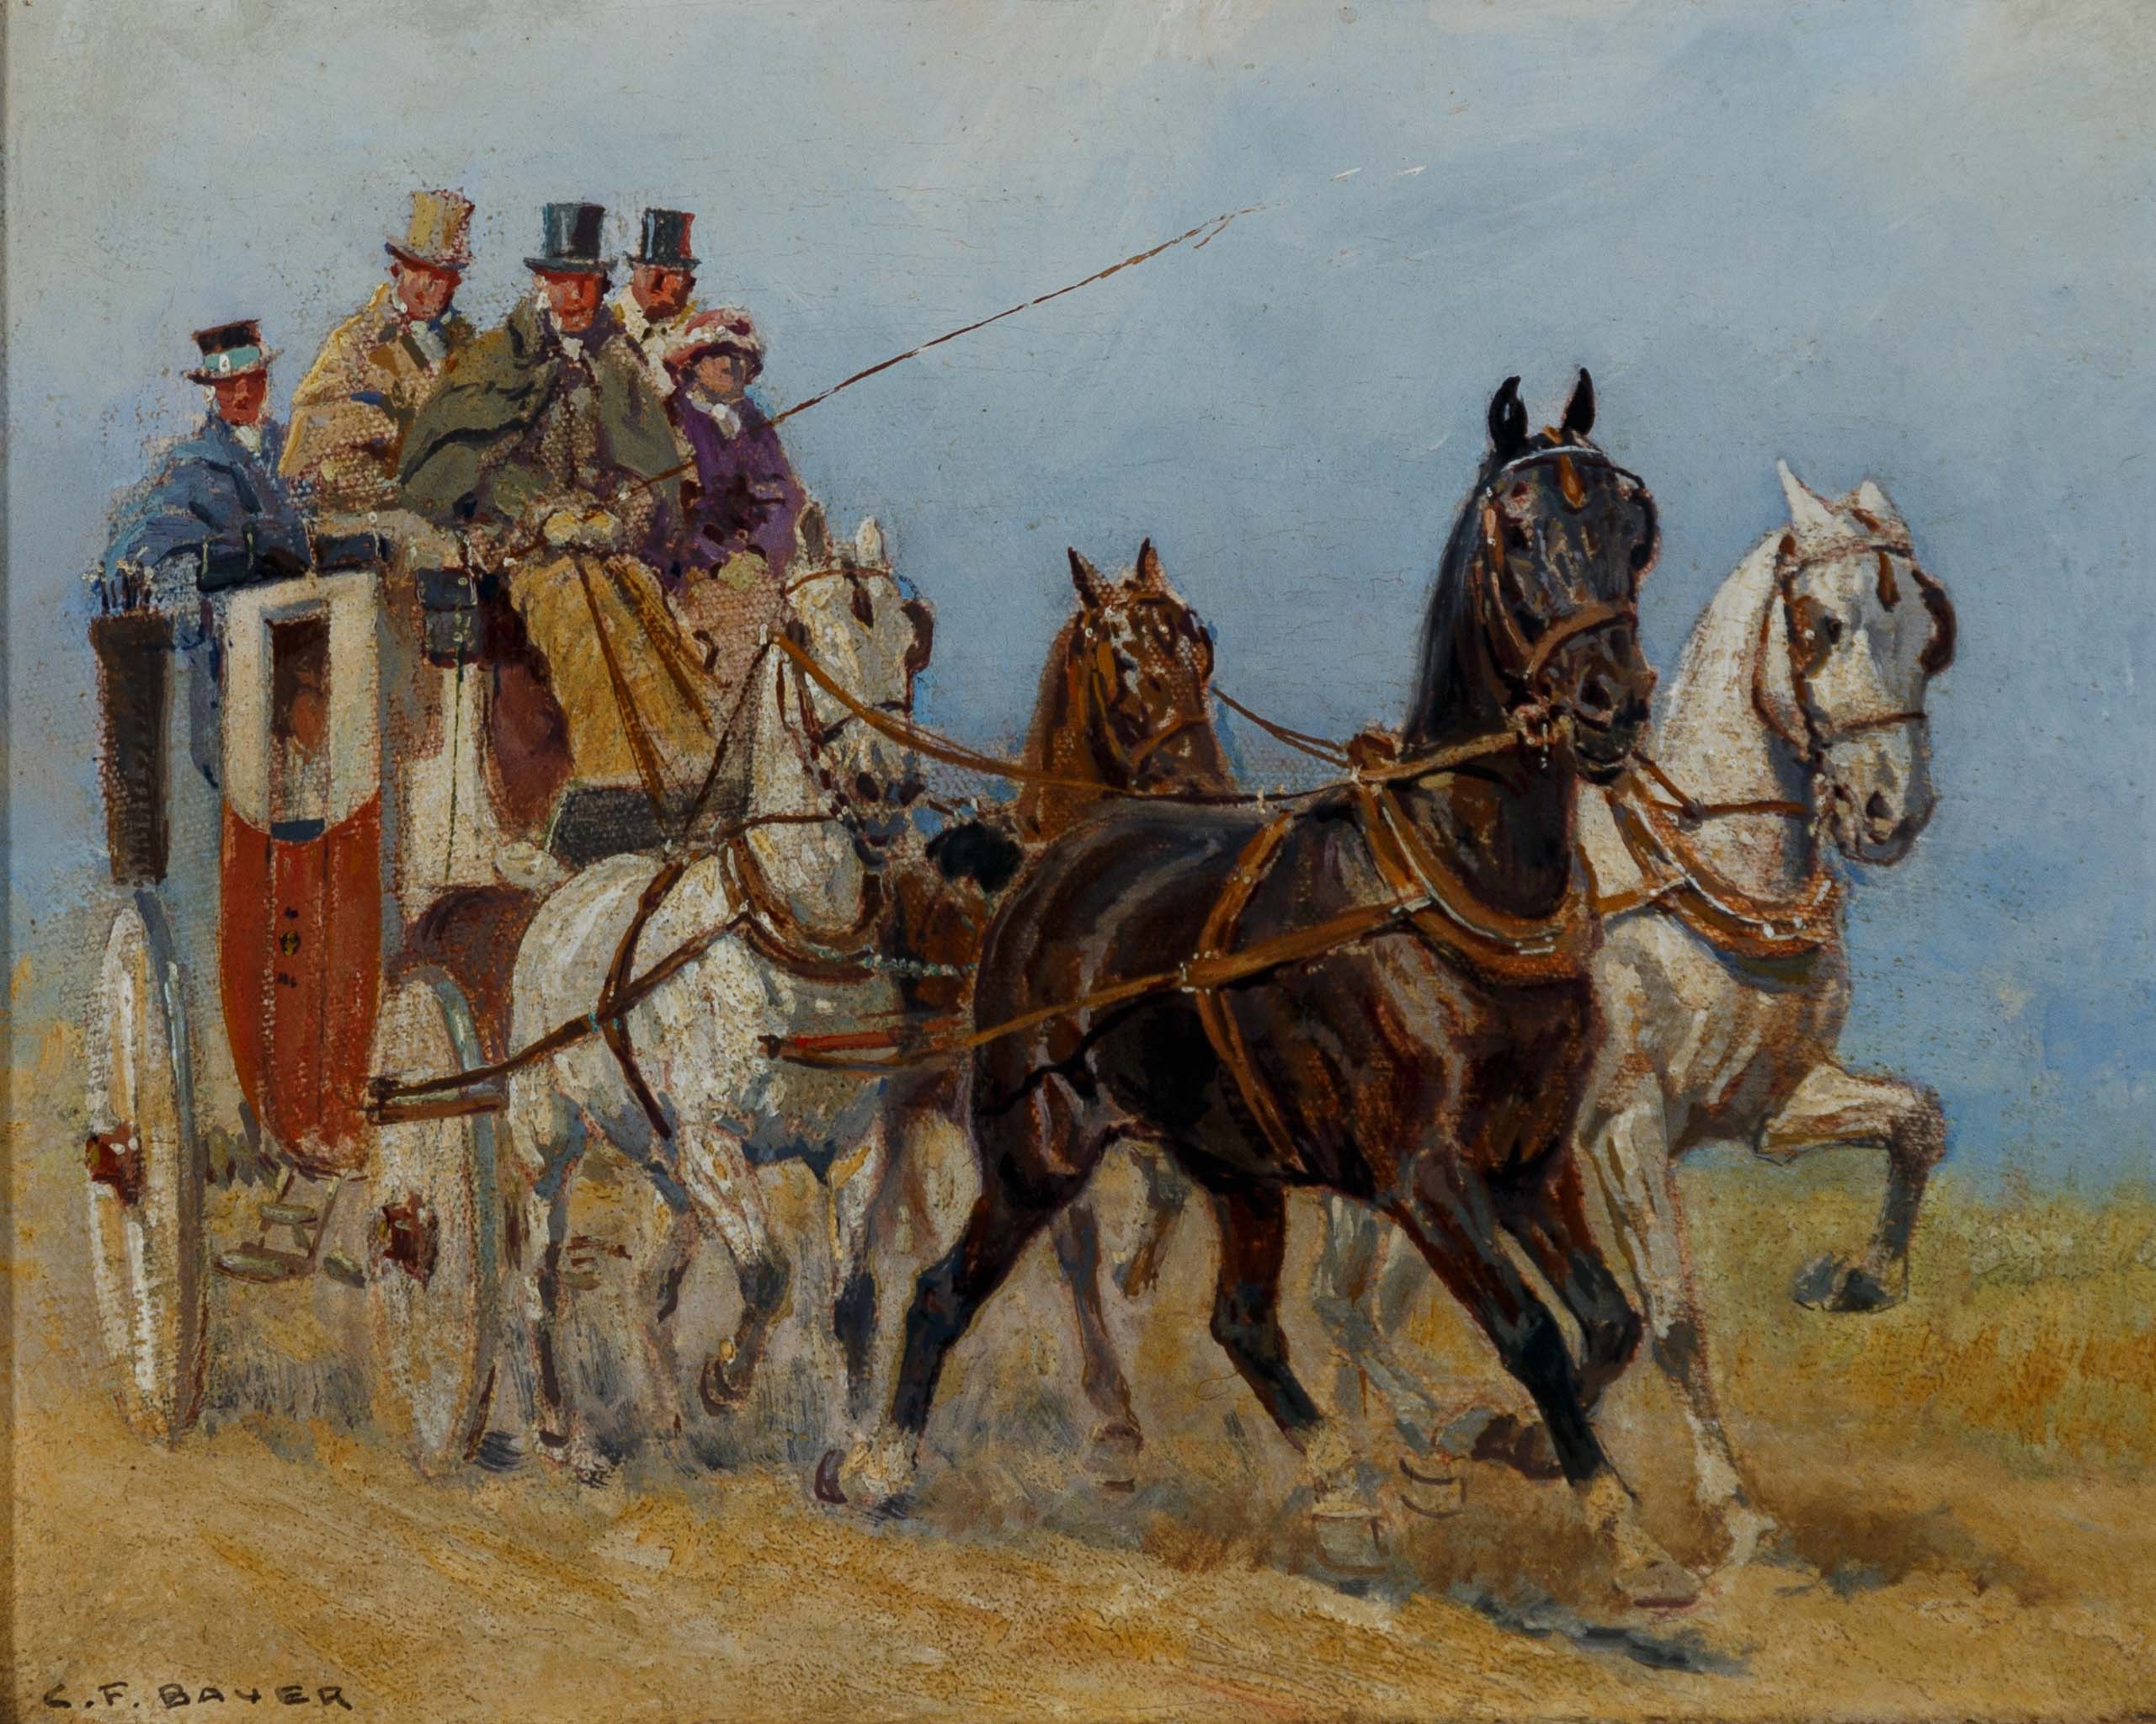 Vierspännige Kutsche auf dem Weg. by Carl Franz Bauer